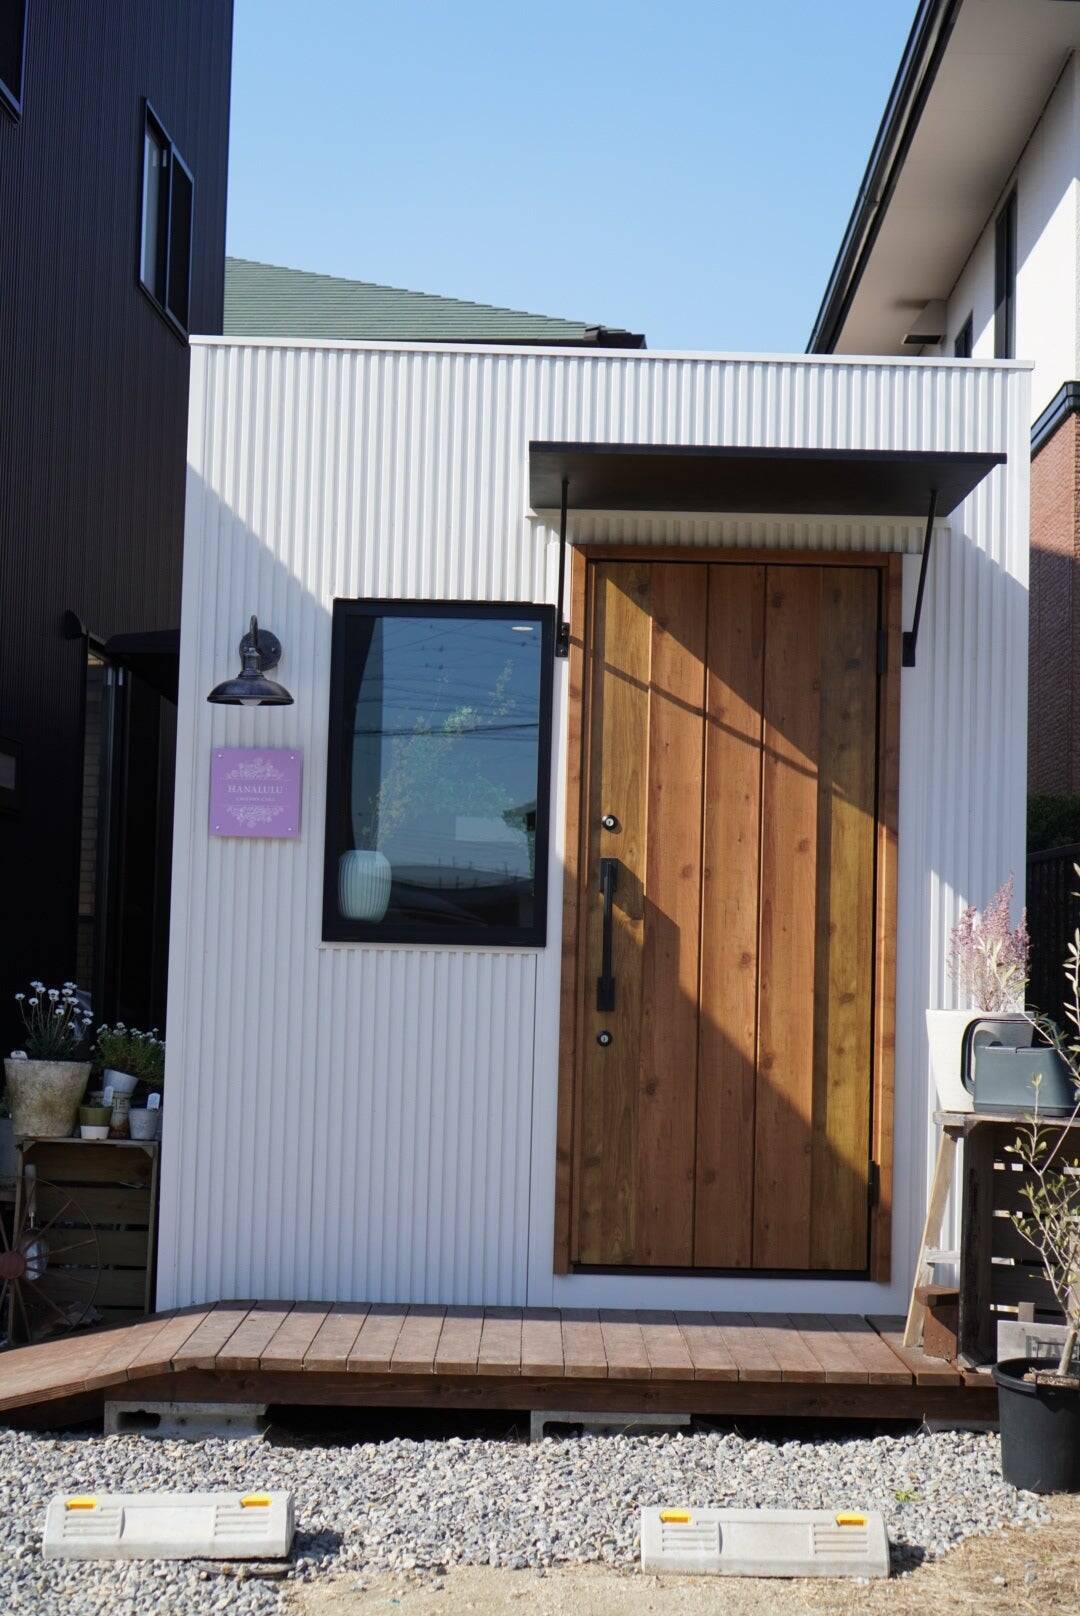 愛知県みよし市から全国へ。コンビニスイーツ開発職から自宅庭で3坪のお菓子屋「HANALULU」を開業した想いとその裏側のストーリー